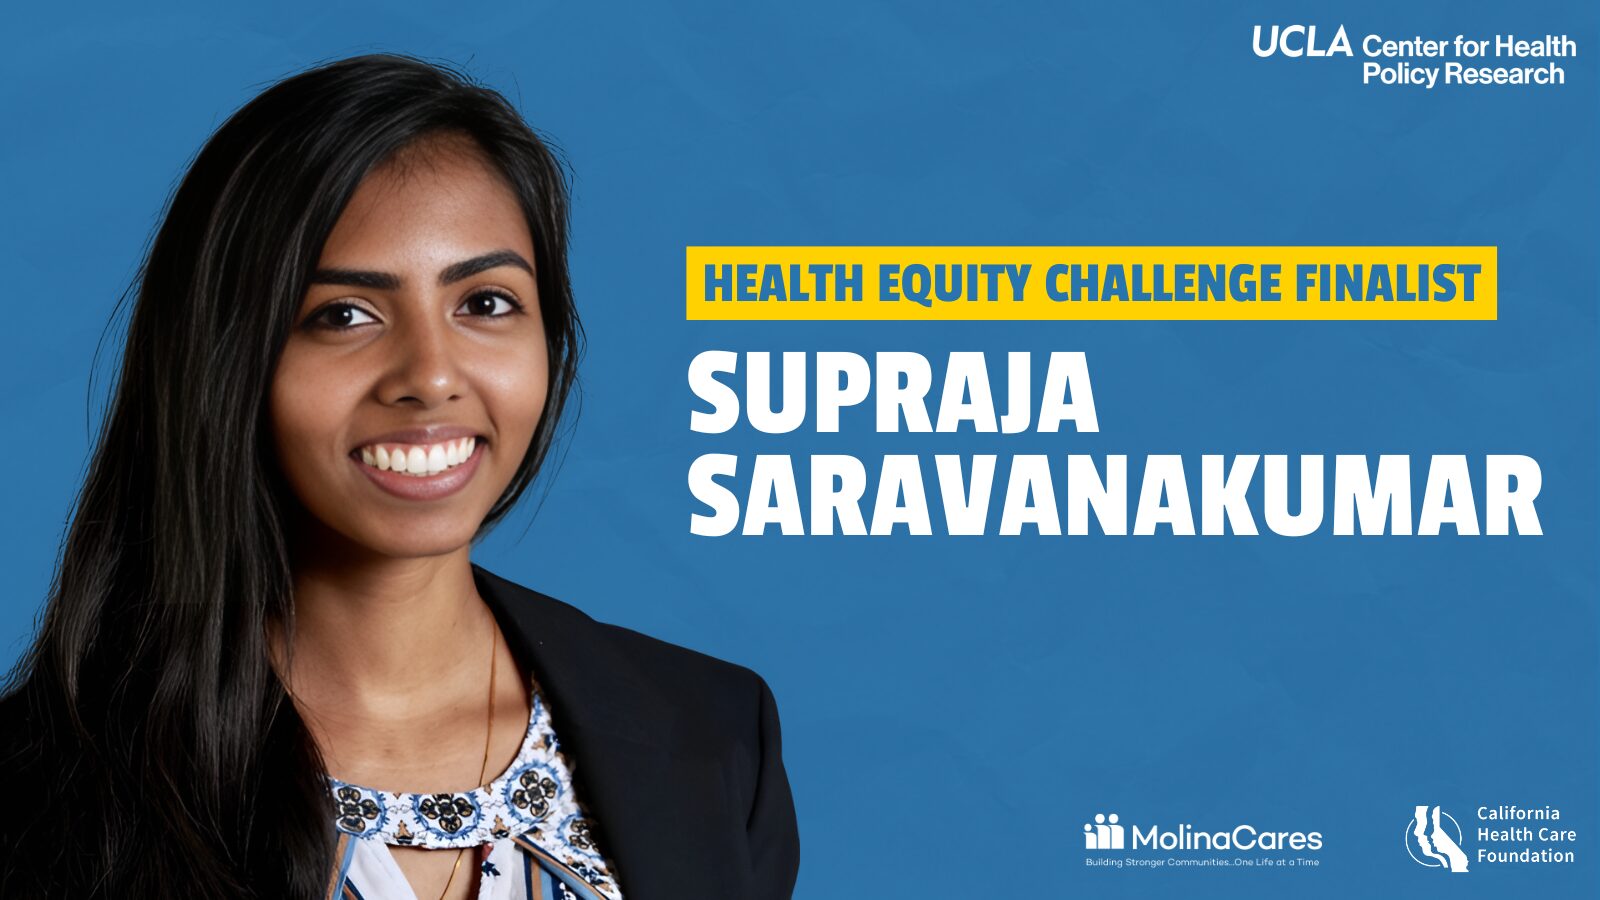 Health Equity Challenge finalist Supraja Saravanakumar